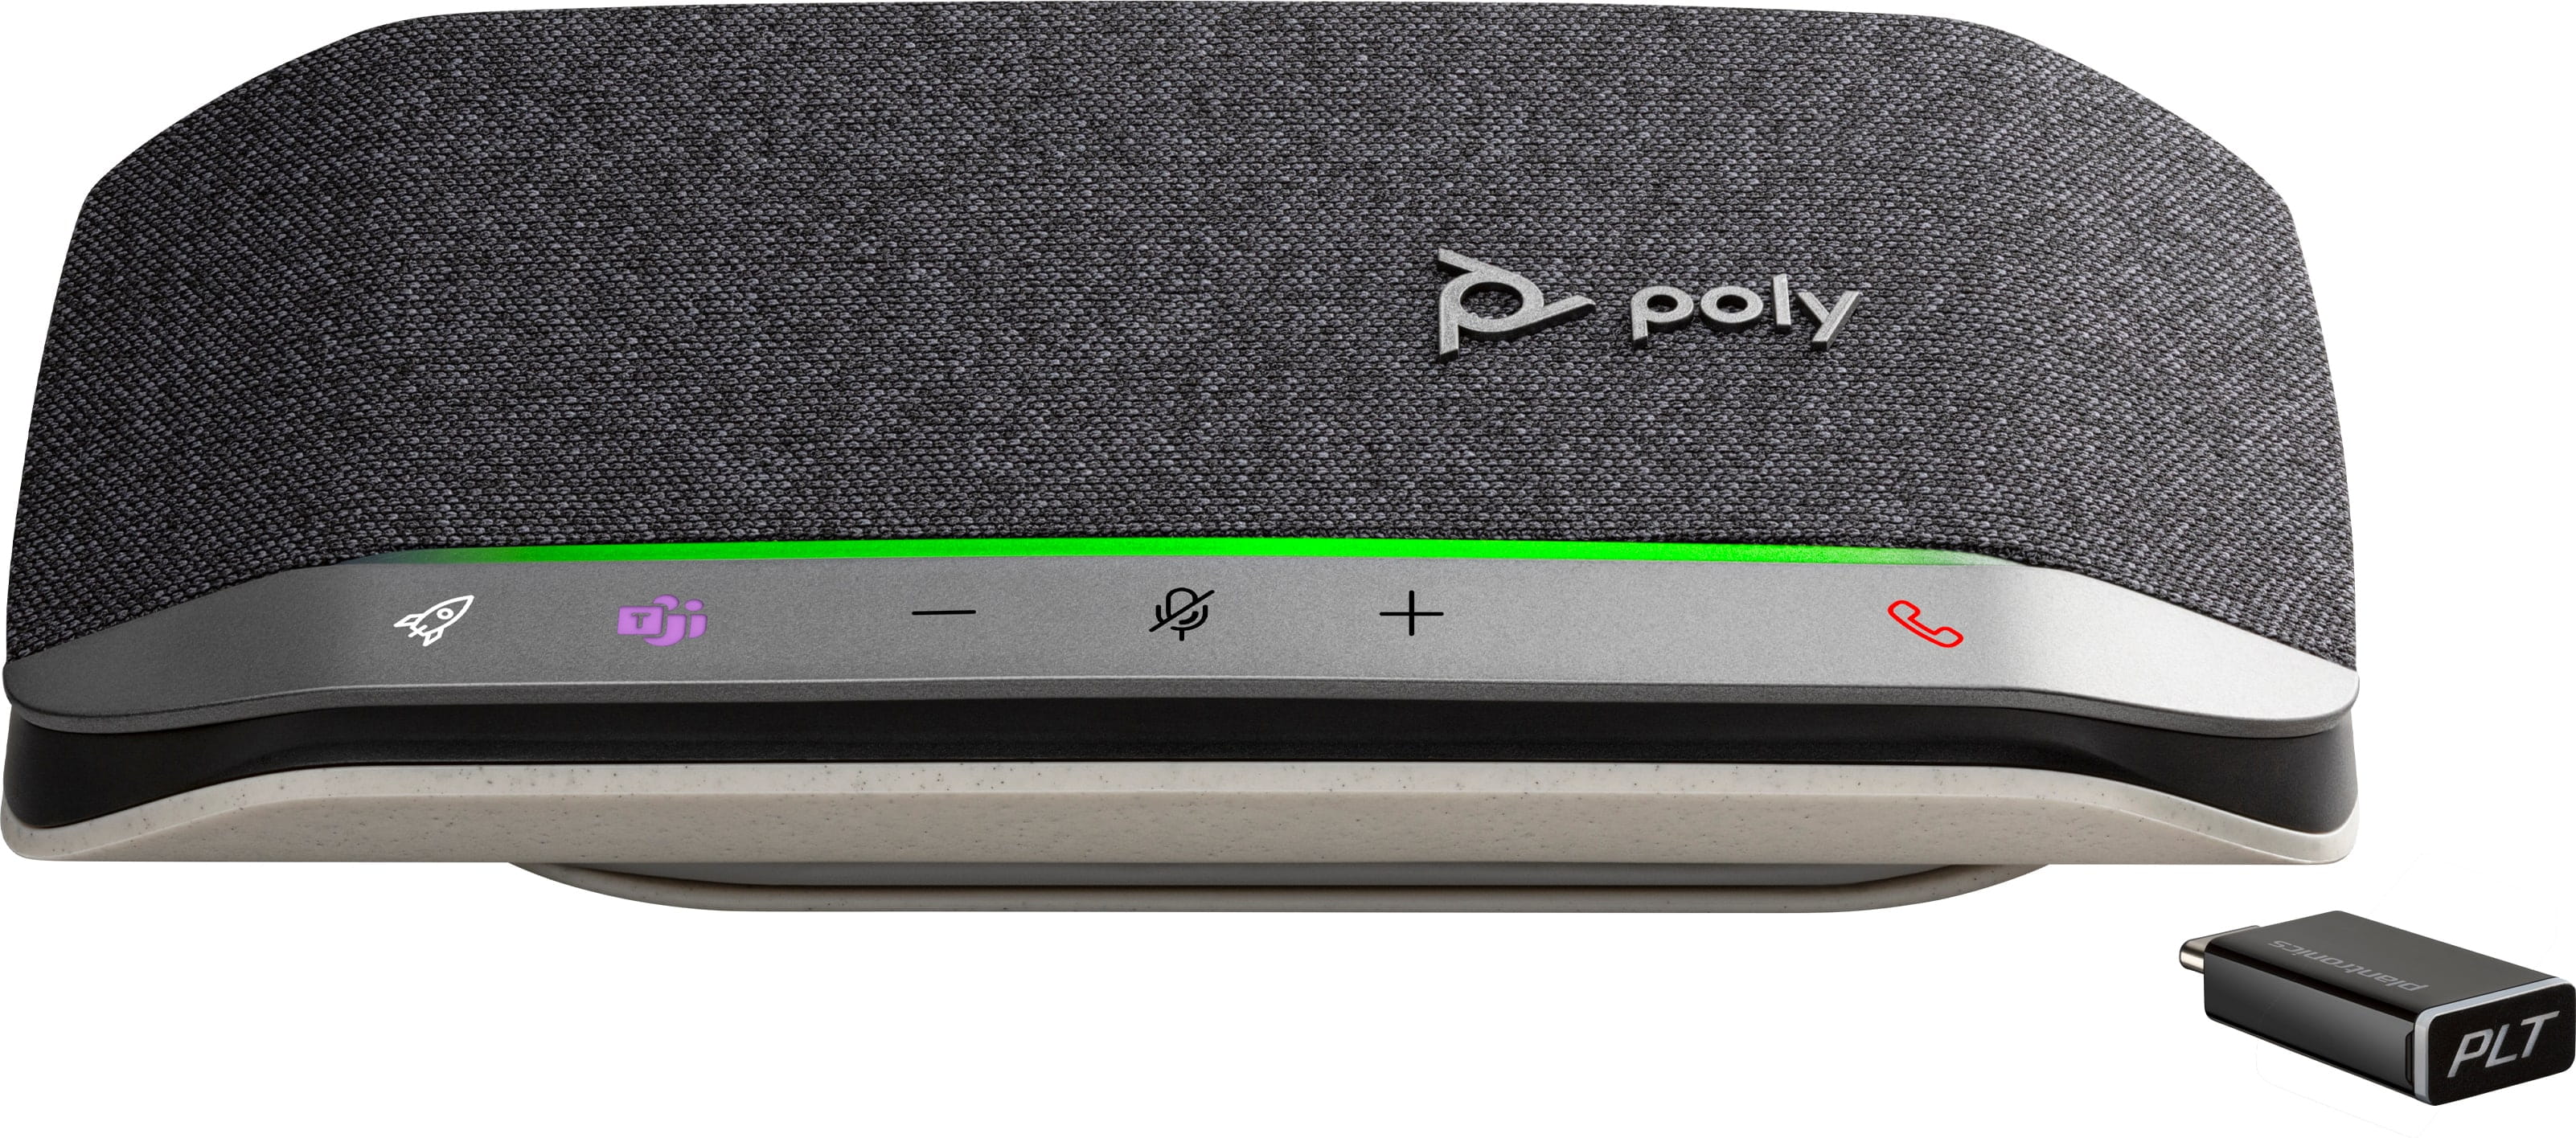 HP Poly Sync 20+ - Smarte Freisprecheinrichtung